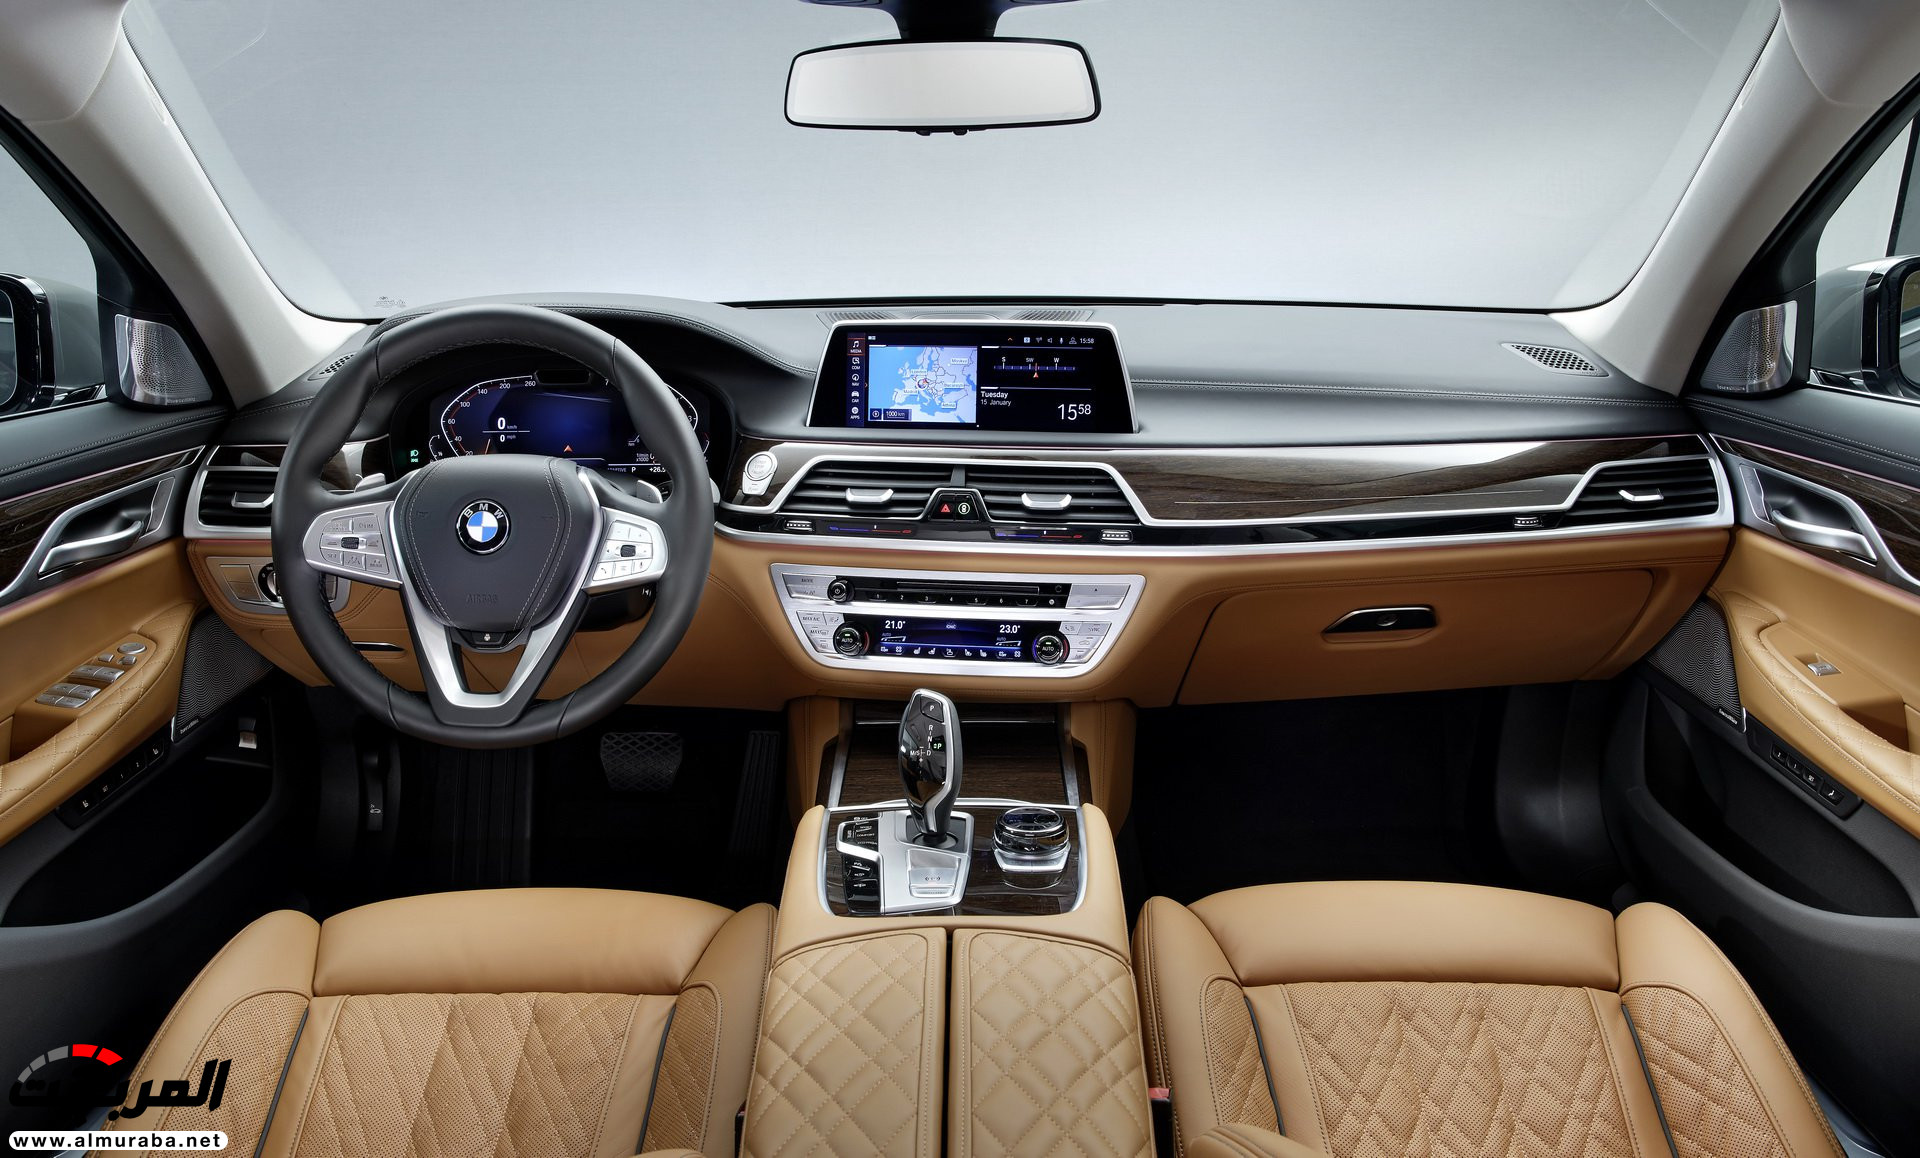 بي ام دبليو الفئة السابعة 2020 المحدثة تكشف نفسها رسمياً "صور ومواصفات" BMW 7 Series 244